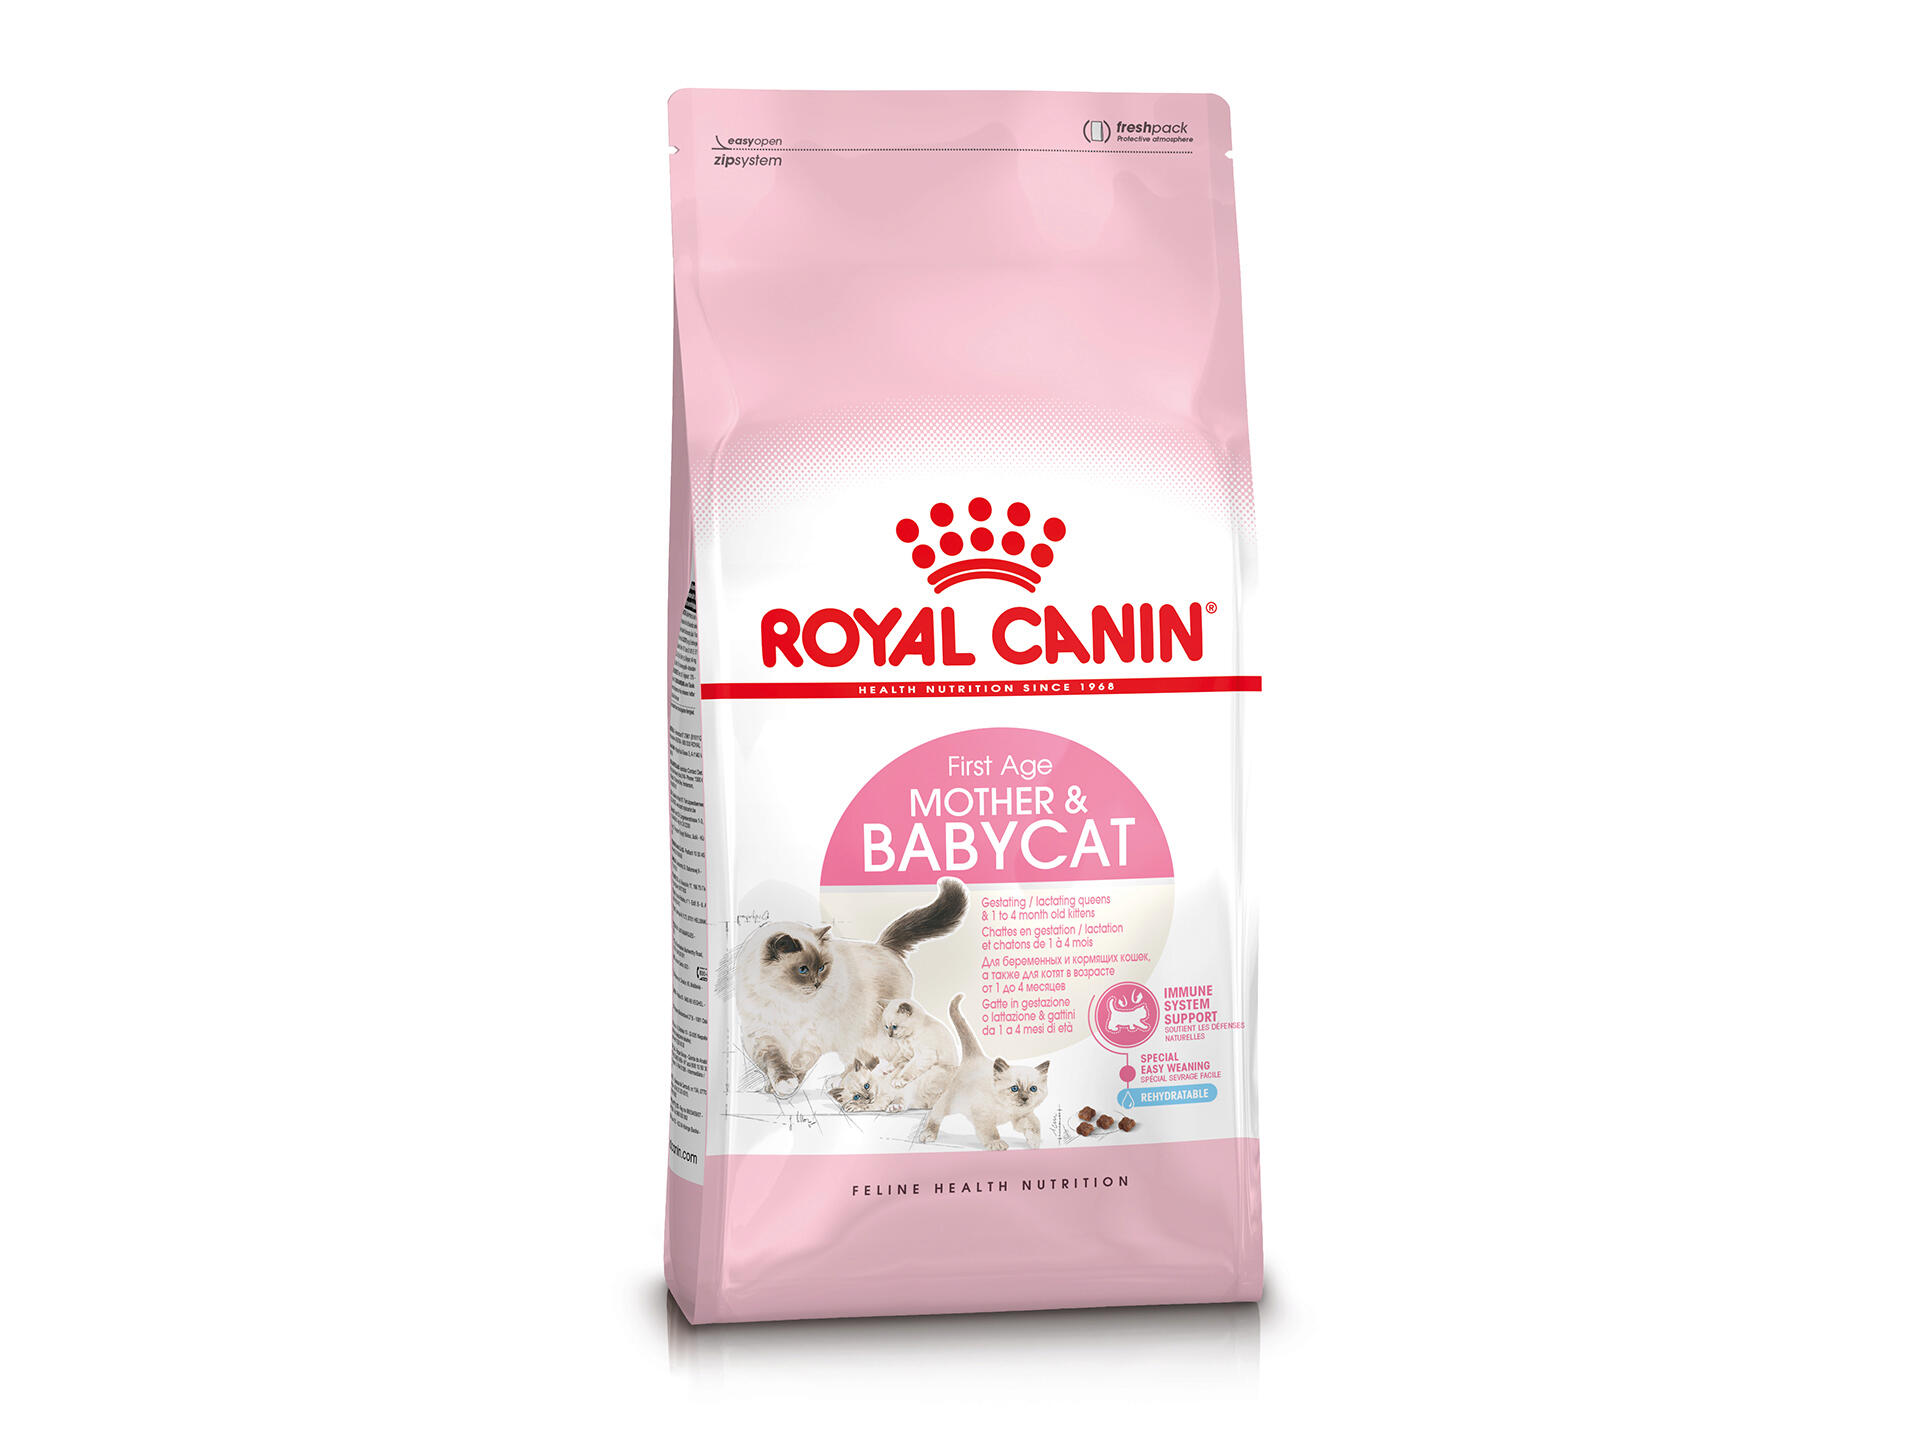 Royal Canin Feline Health Nutrition Babycat kattenvoer 2kg